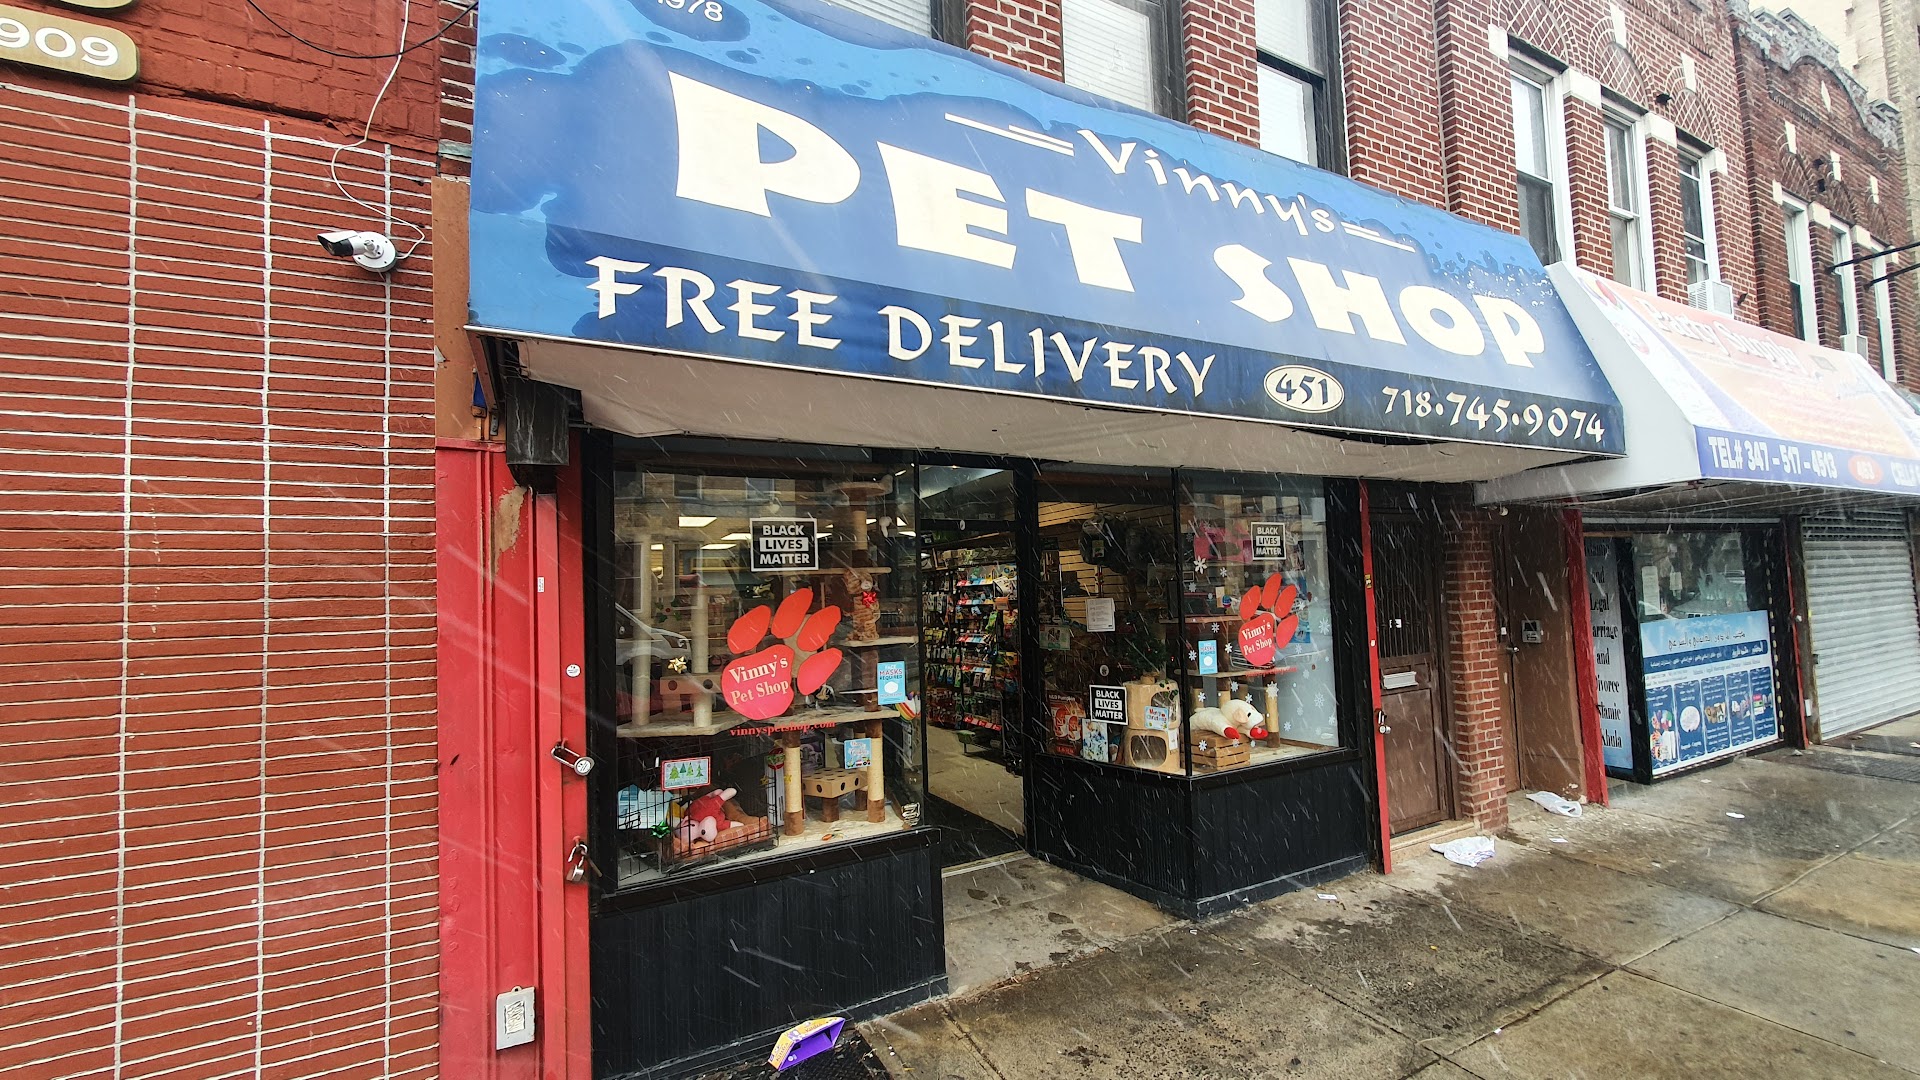 Vinny's Pet Shop